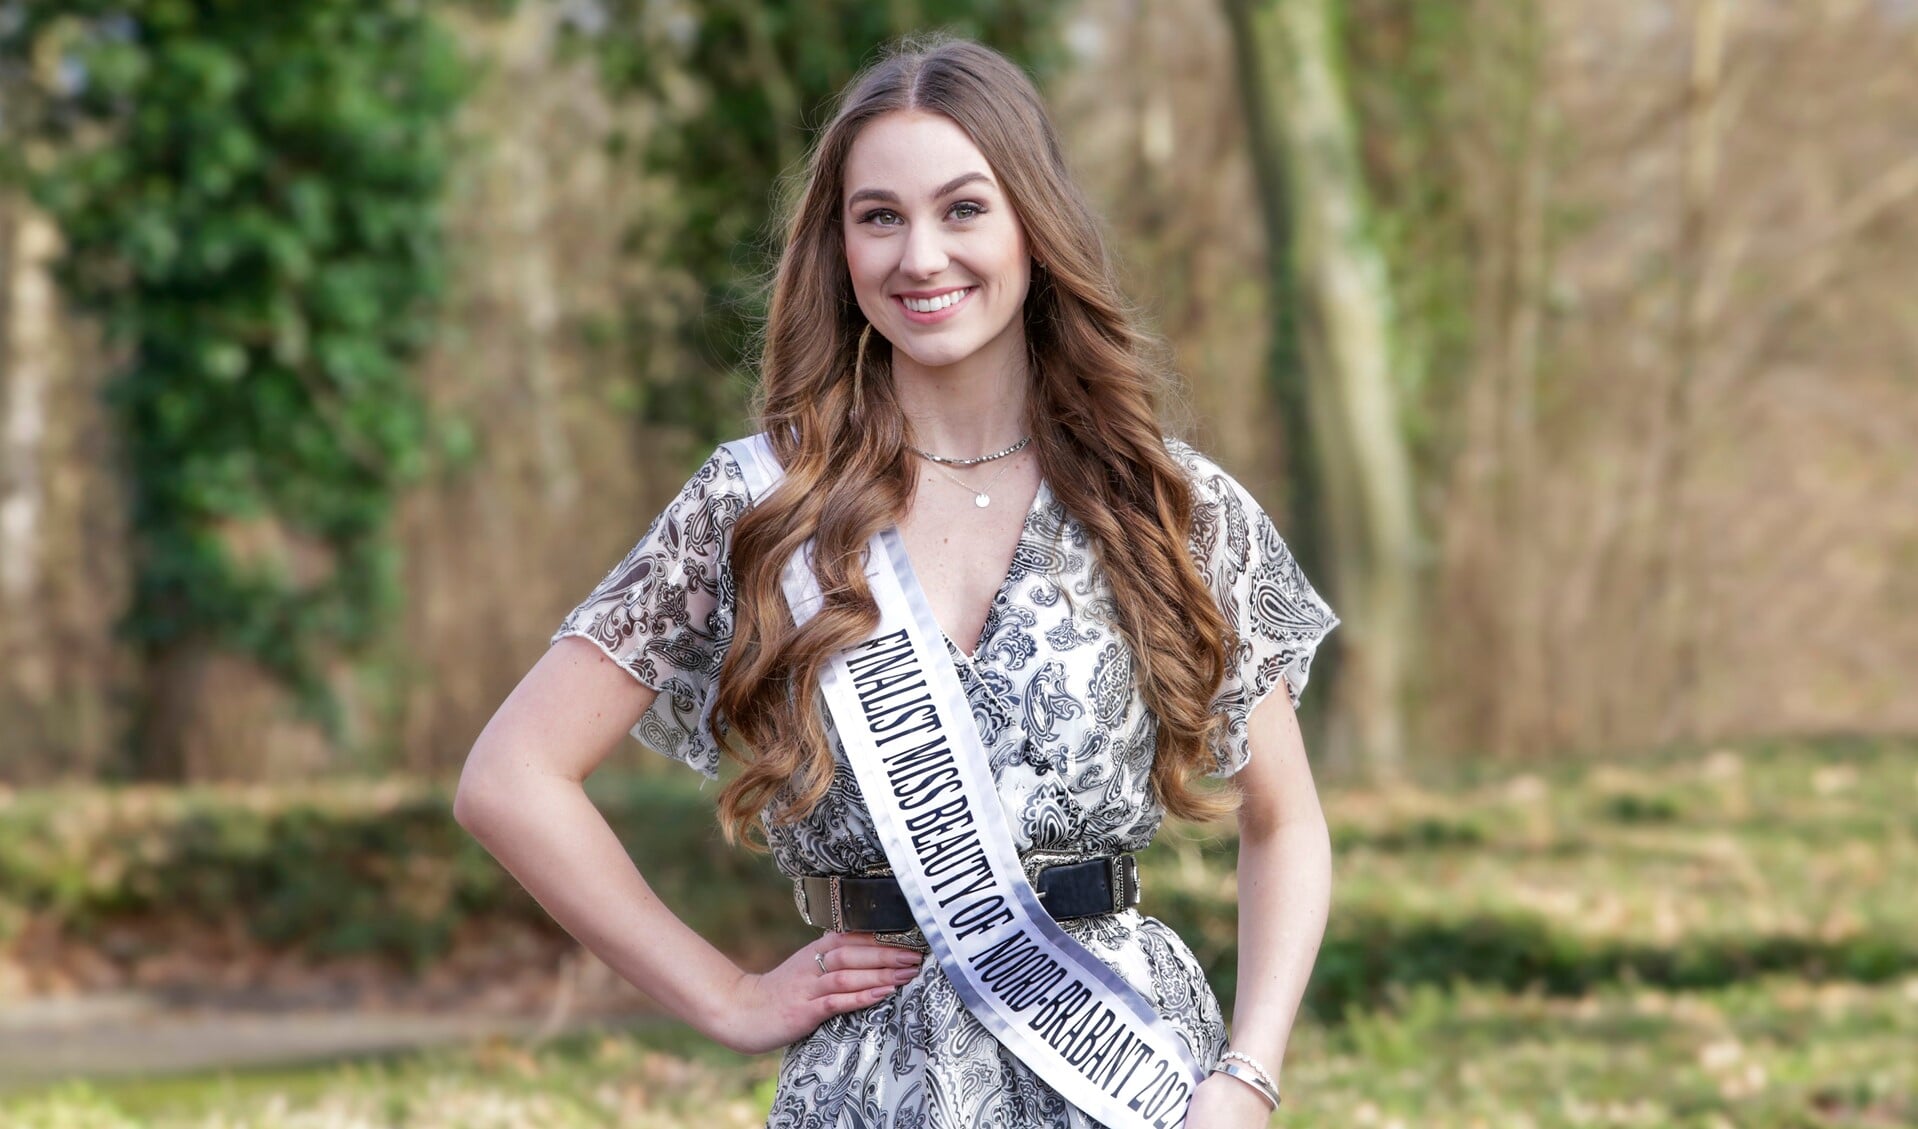 De 21-jarige Lisa van Rossum uit Valkenswaard is genomineerd voor de titel 'Miss Beauty Noord-Brabant 2022'. (Foto: Jurgen van Hoof)